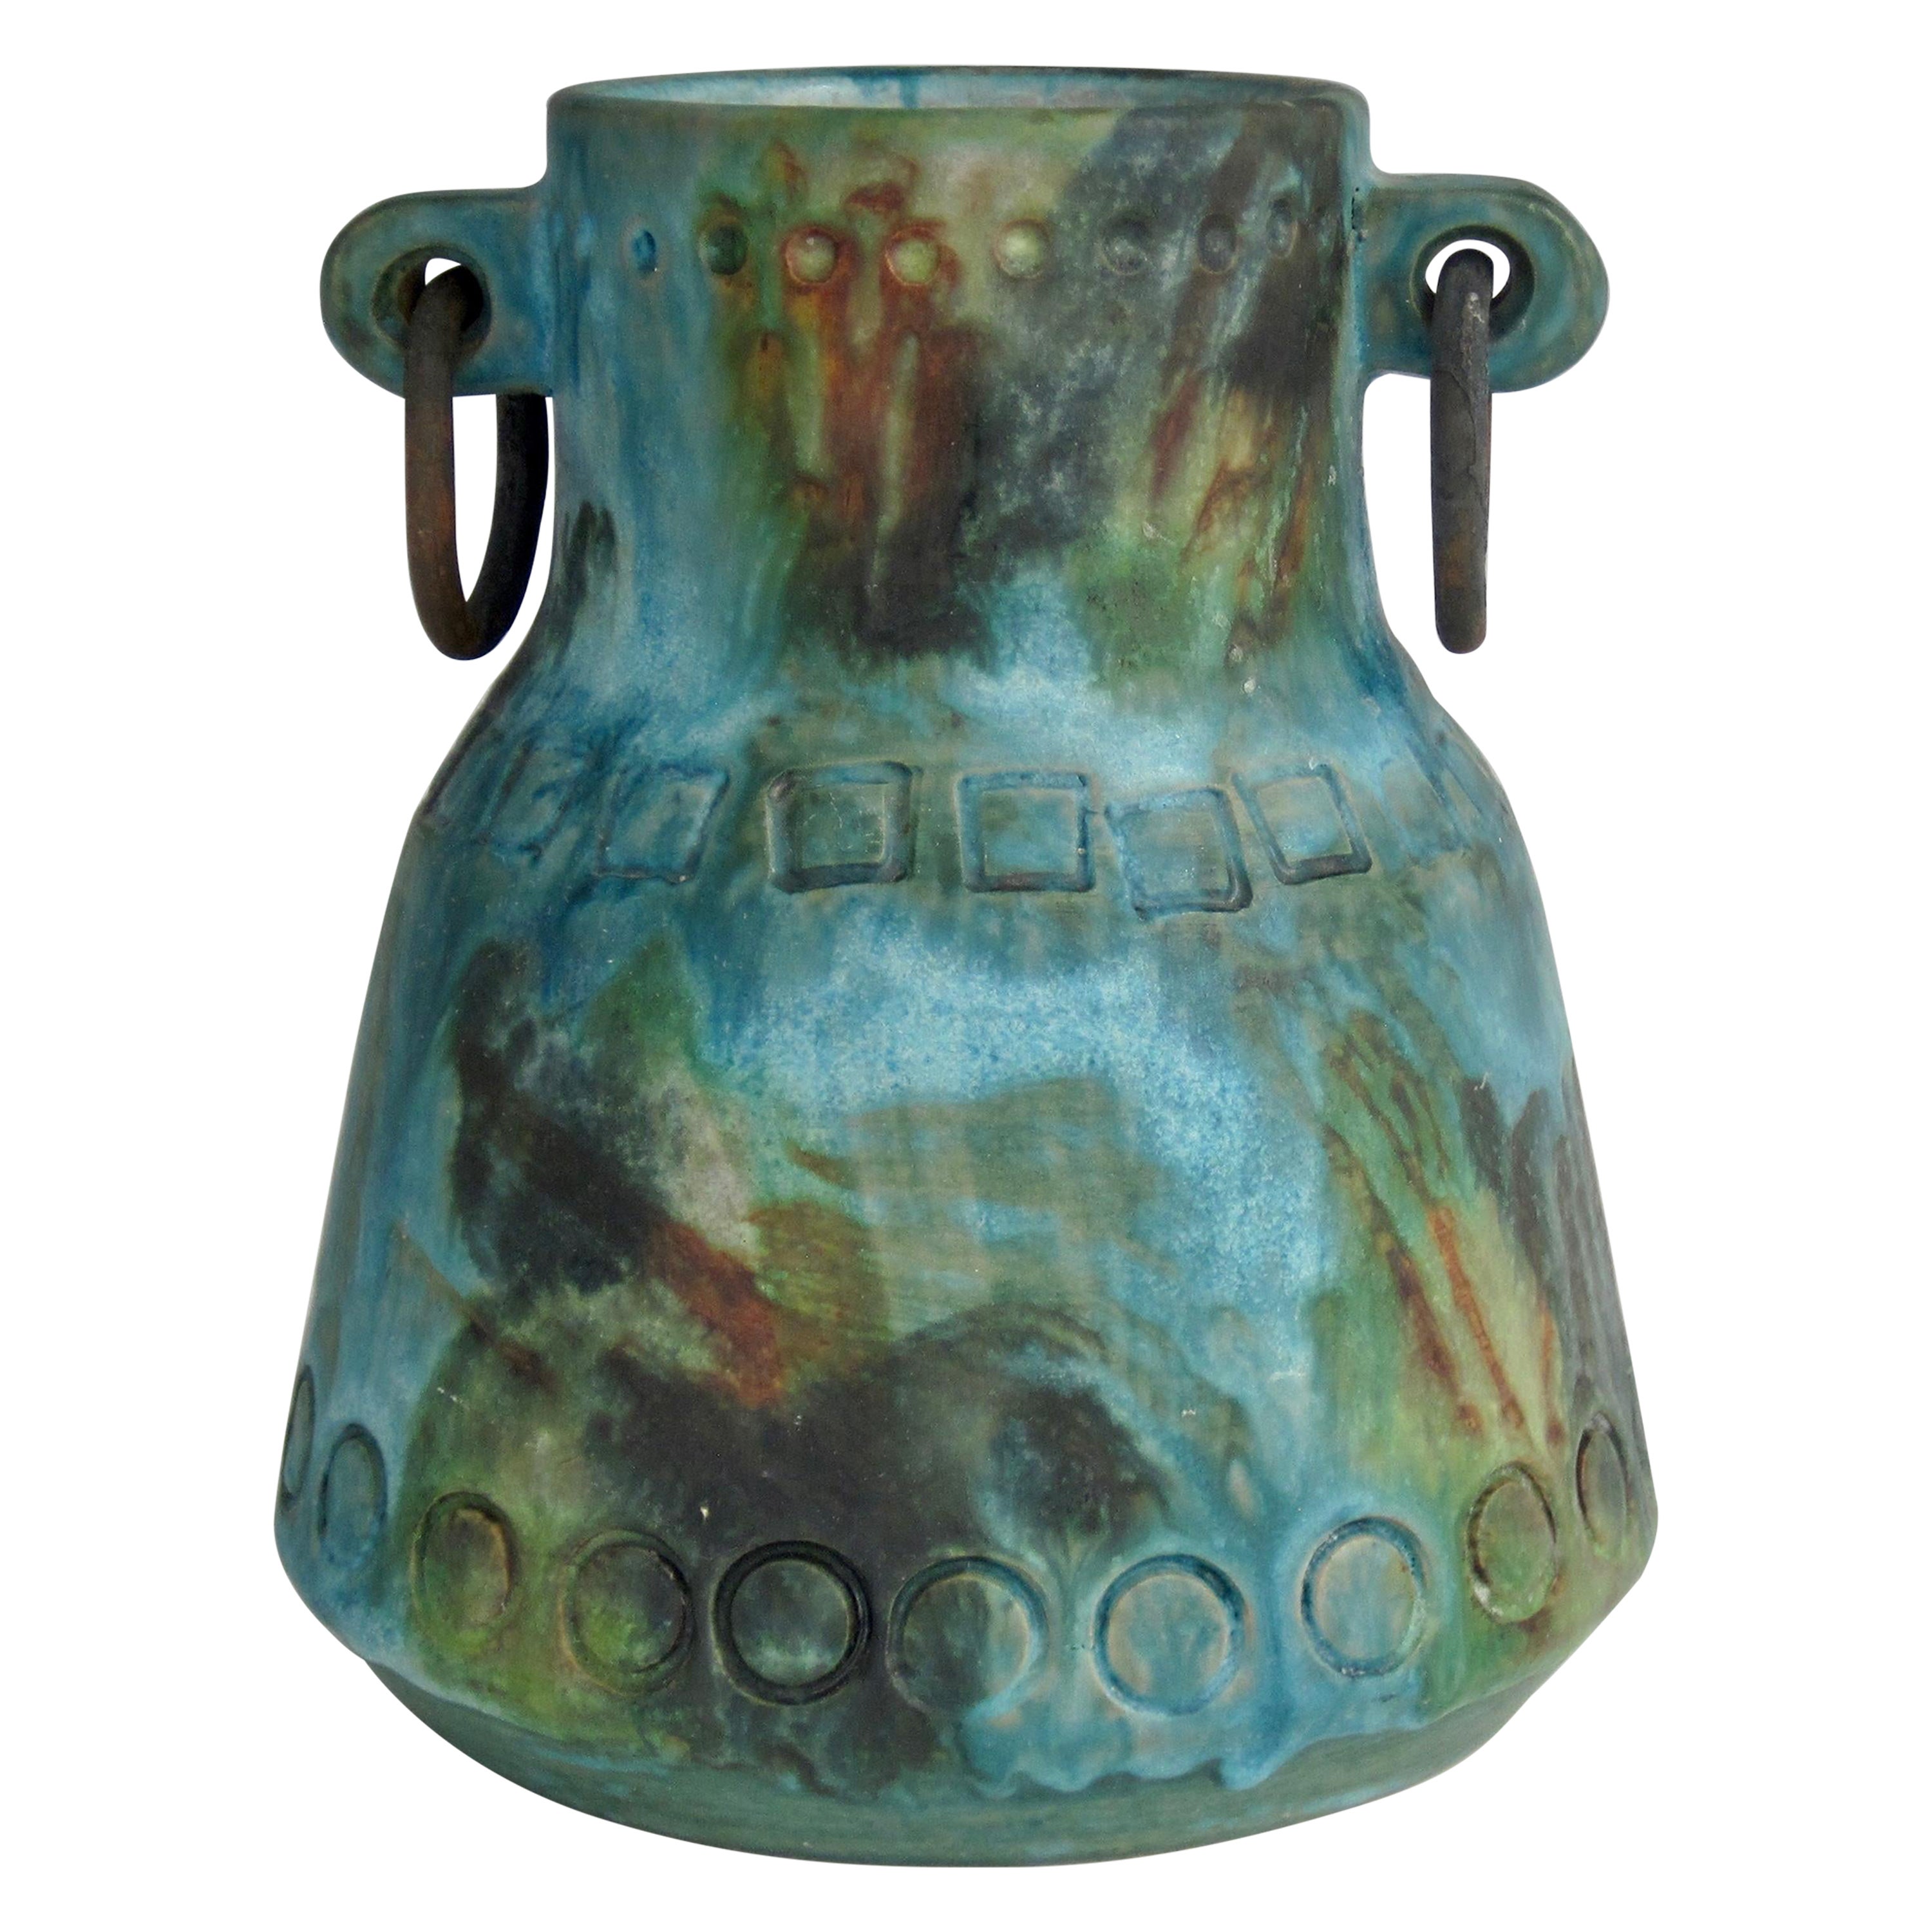 Alvino Bagni Pottery Vessel, Sea Garden Series, 1960s For Sale